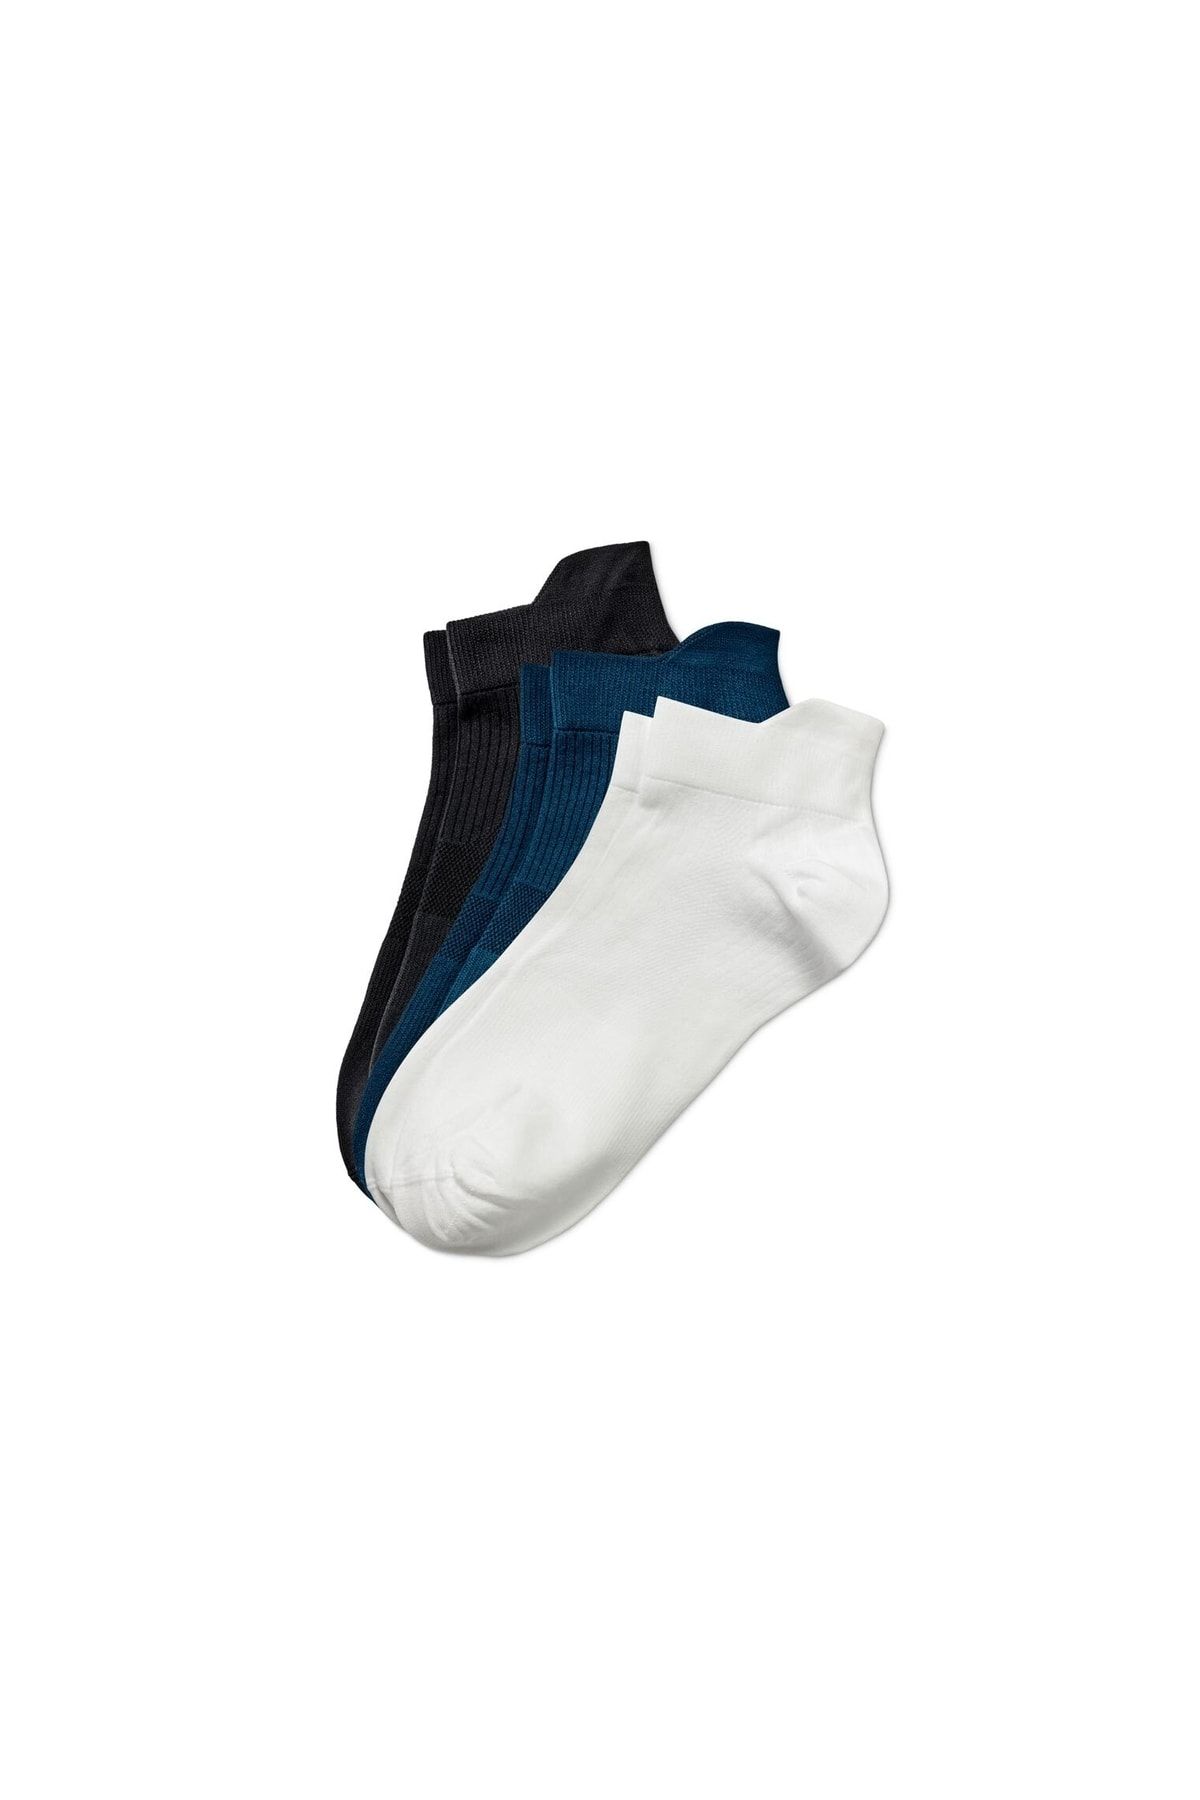 Tchibo Profesyonel Koşu Çorabı, Mavi, Beyaz, Antrasit